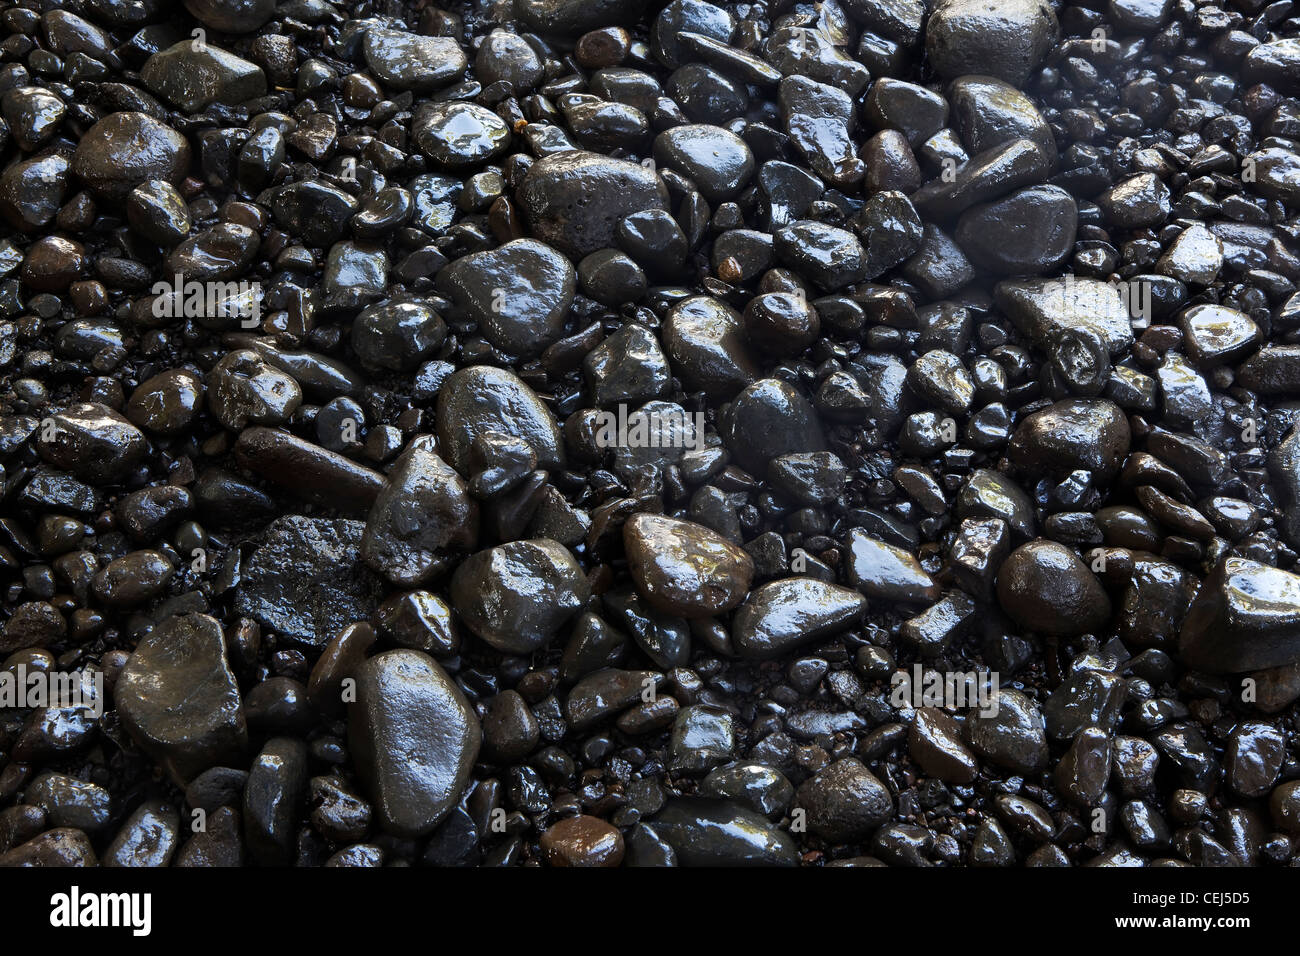 Shiny black stones background Stock Photo